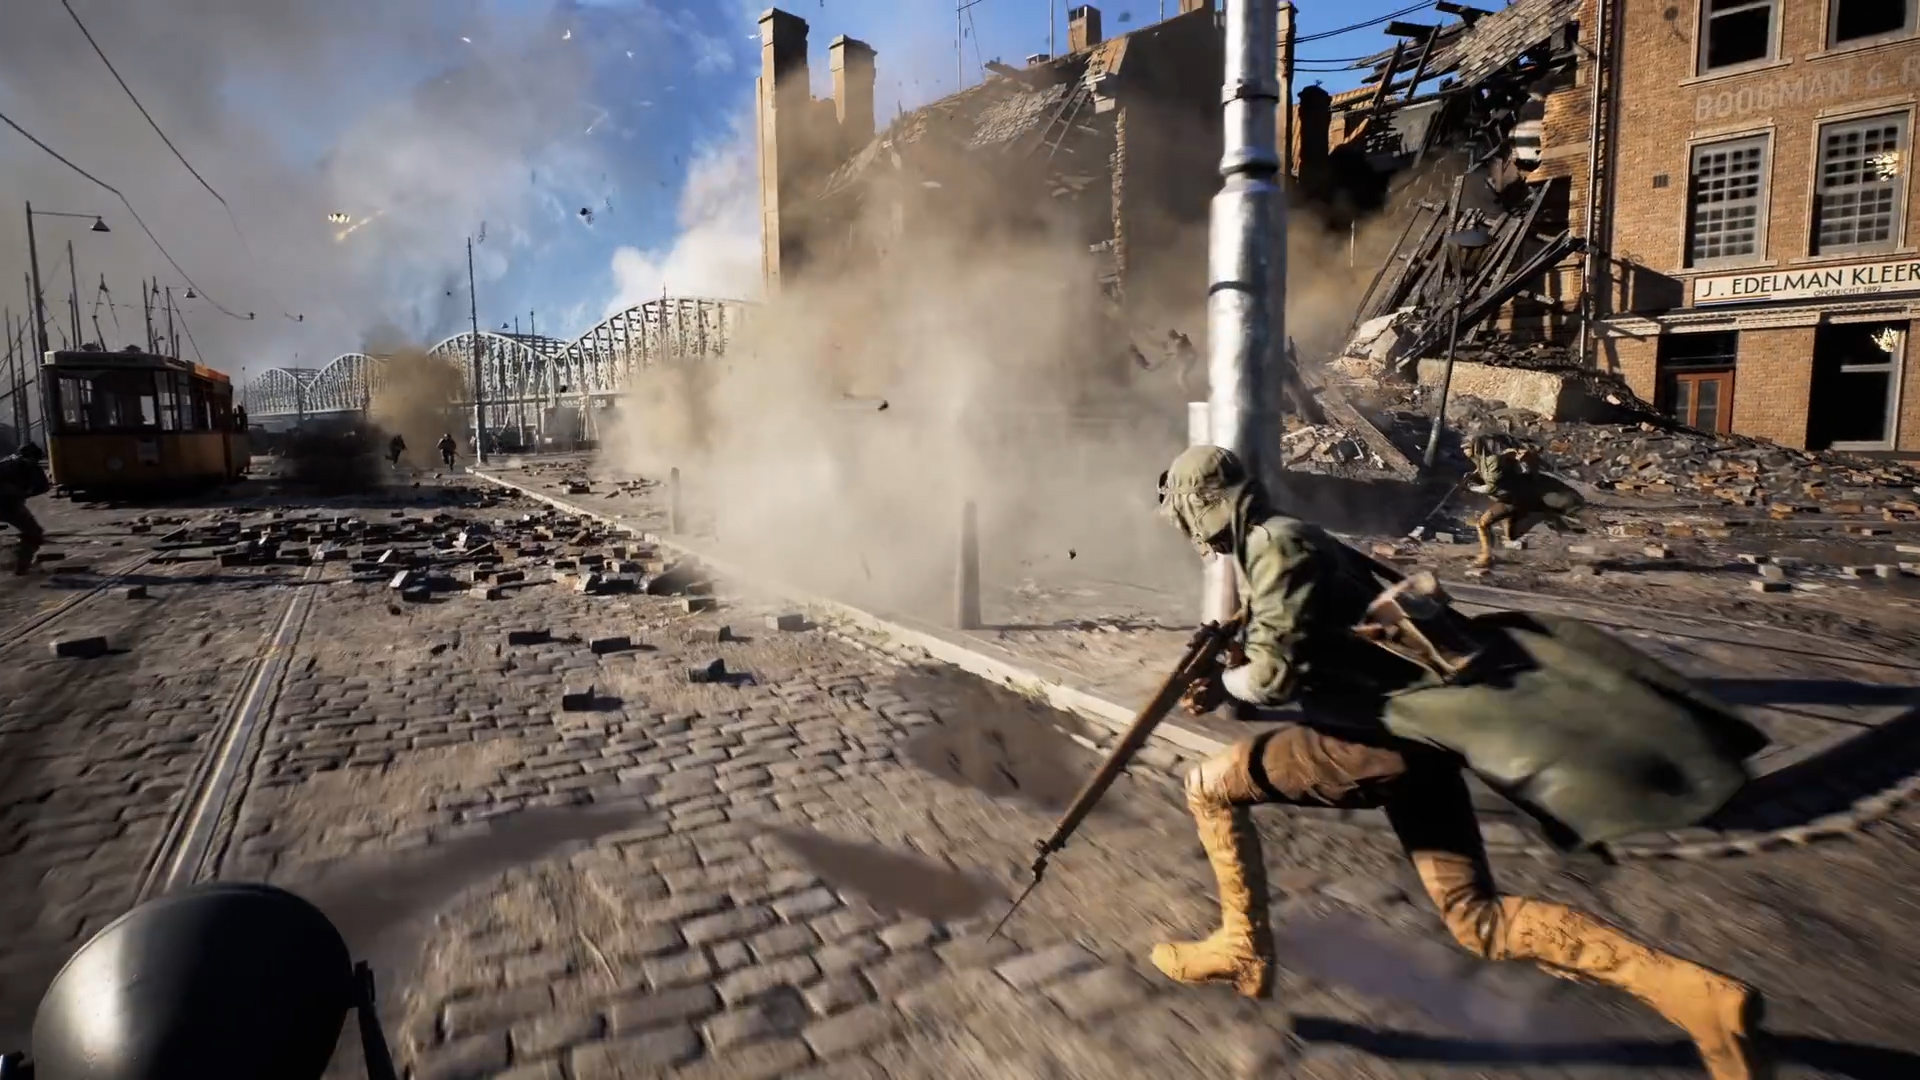 Battle Royale de Battlefield 5, Firestorm recebe primeiro gameplay